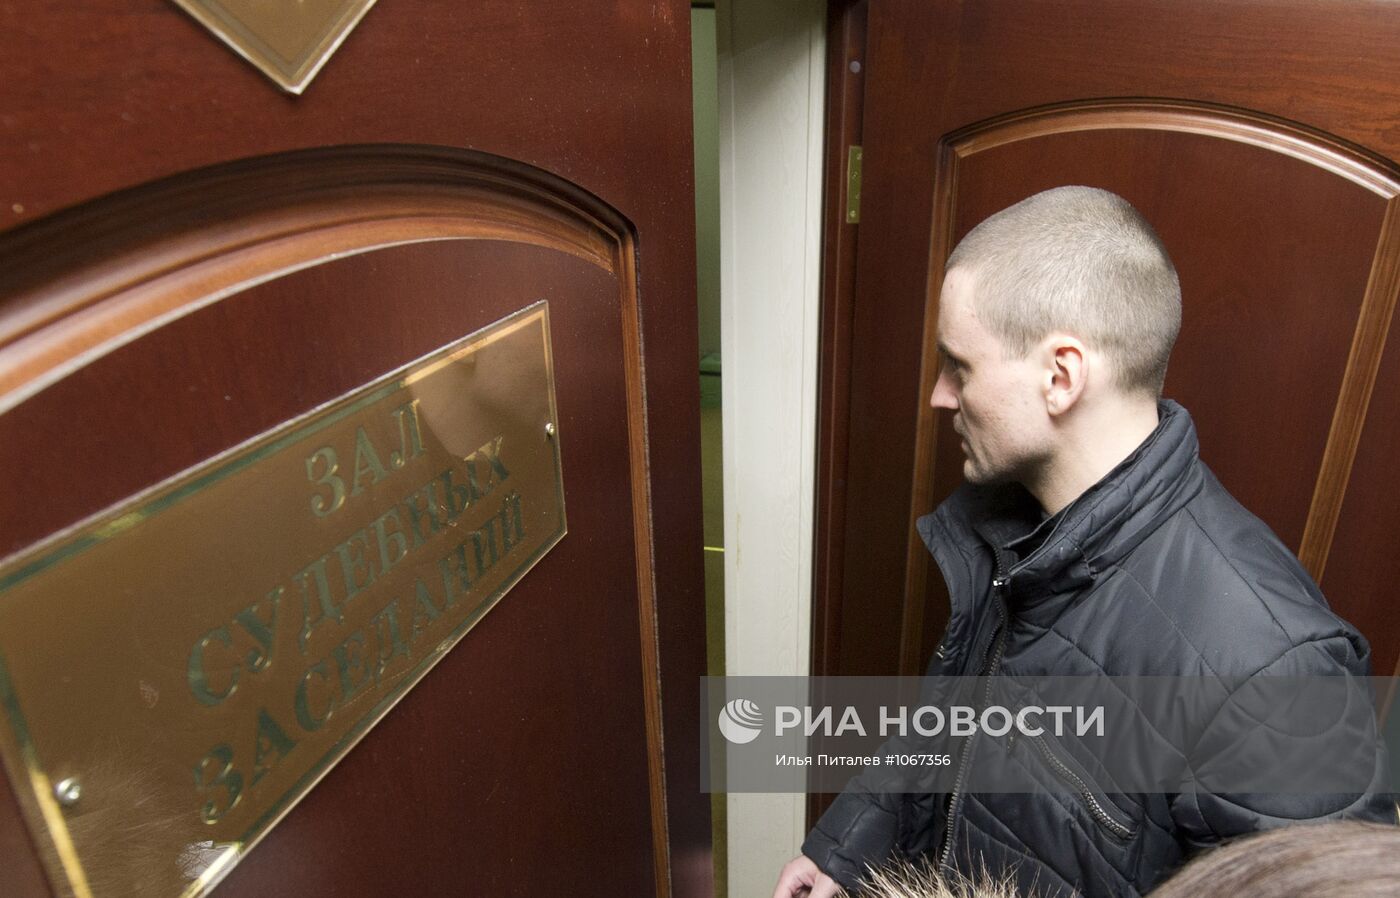 Заседание Пресненского суда по делу Сергея Удальцова